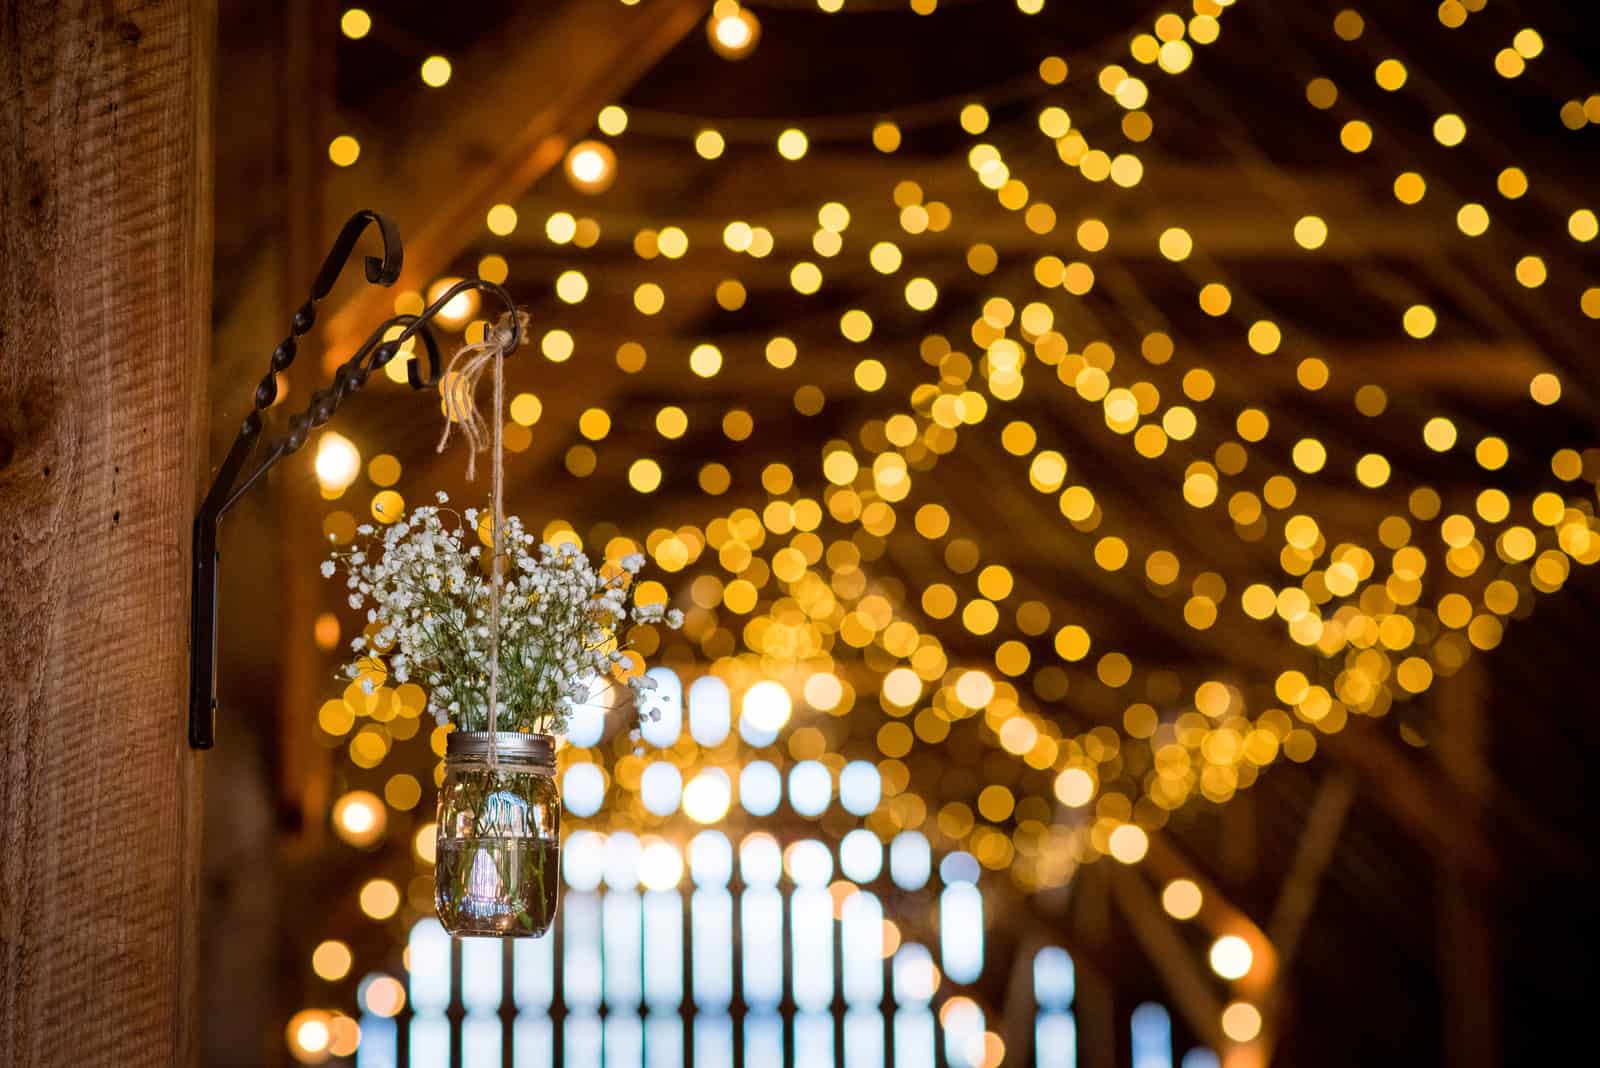 Innenscheune Hochzeit mit schönen Cafe String Beleuchtung in eleganter Umgebung